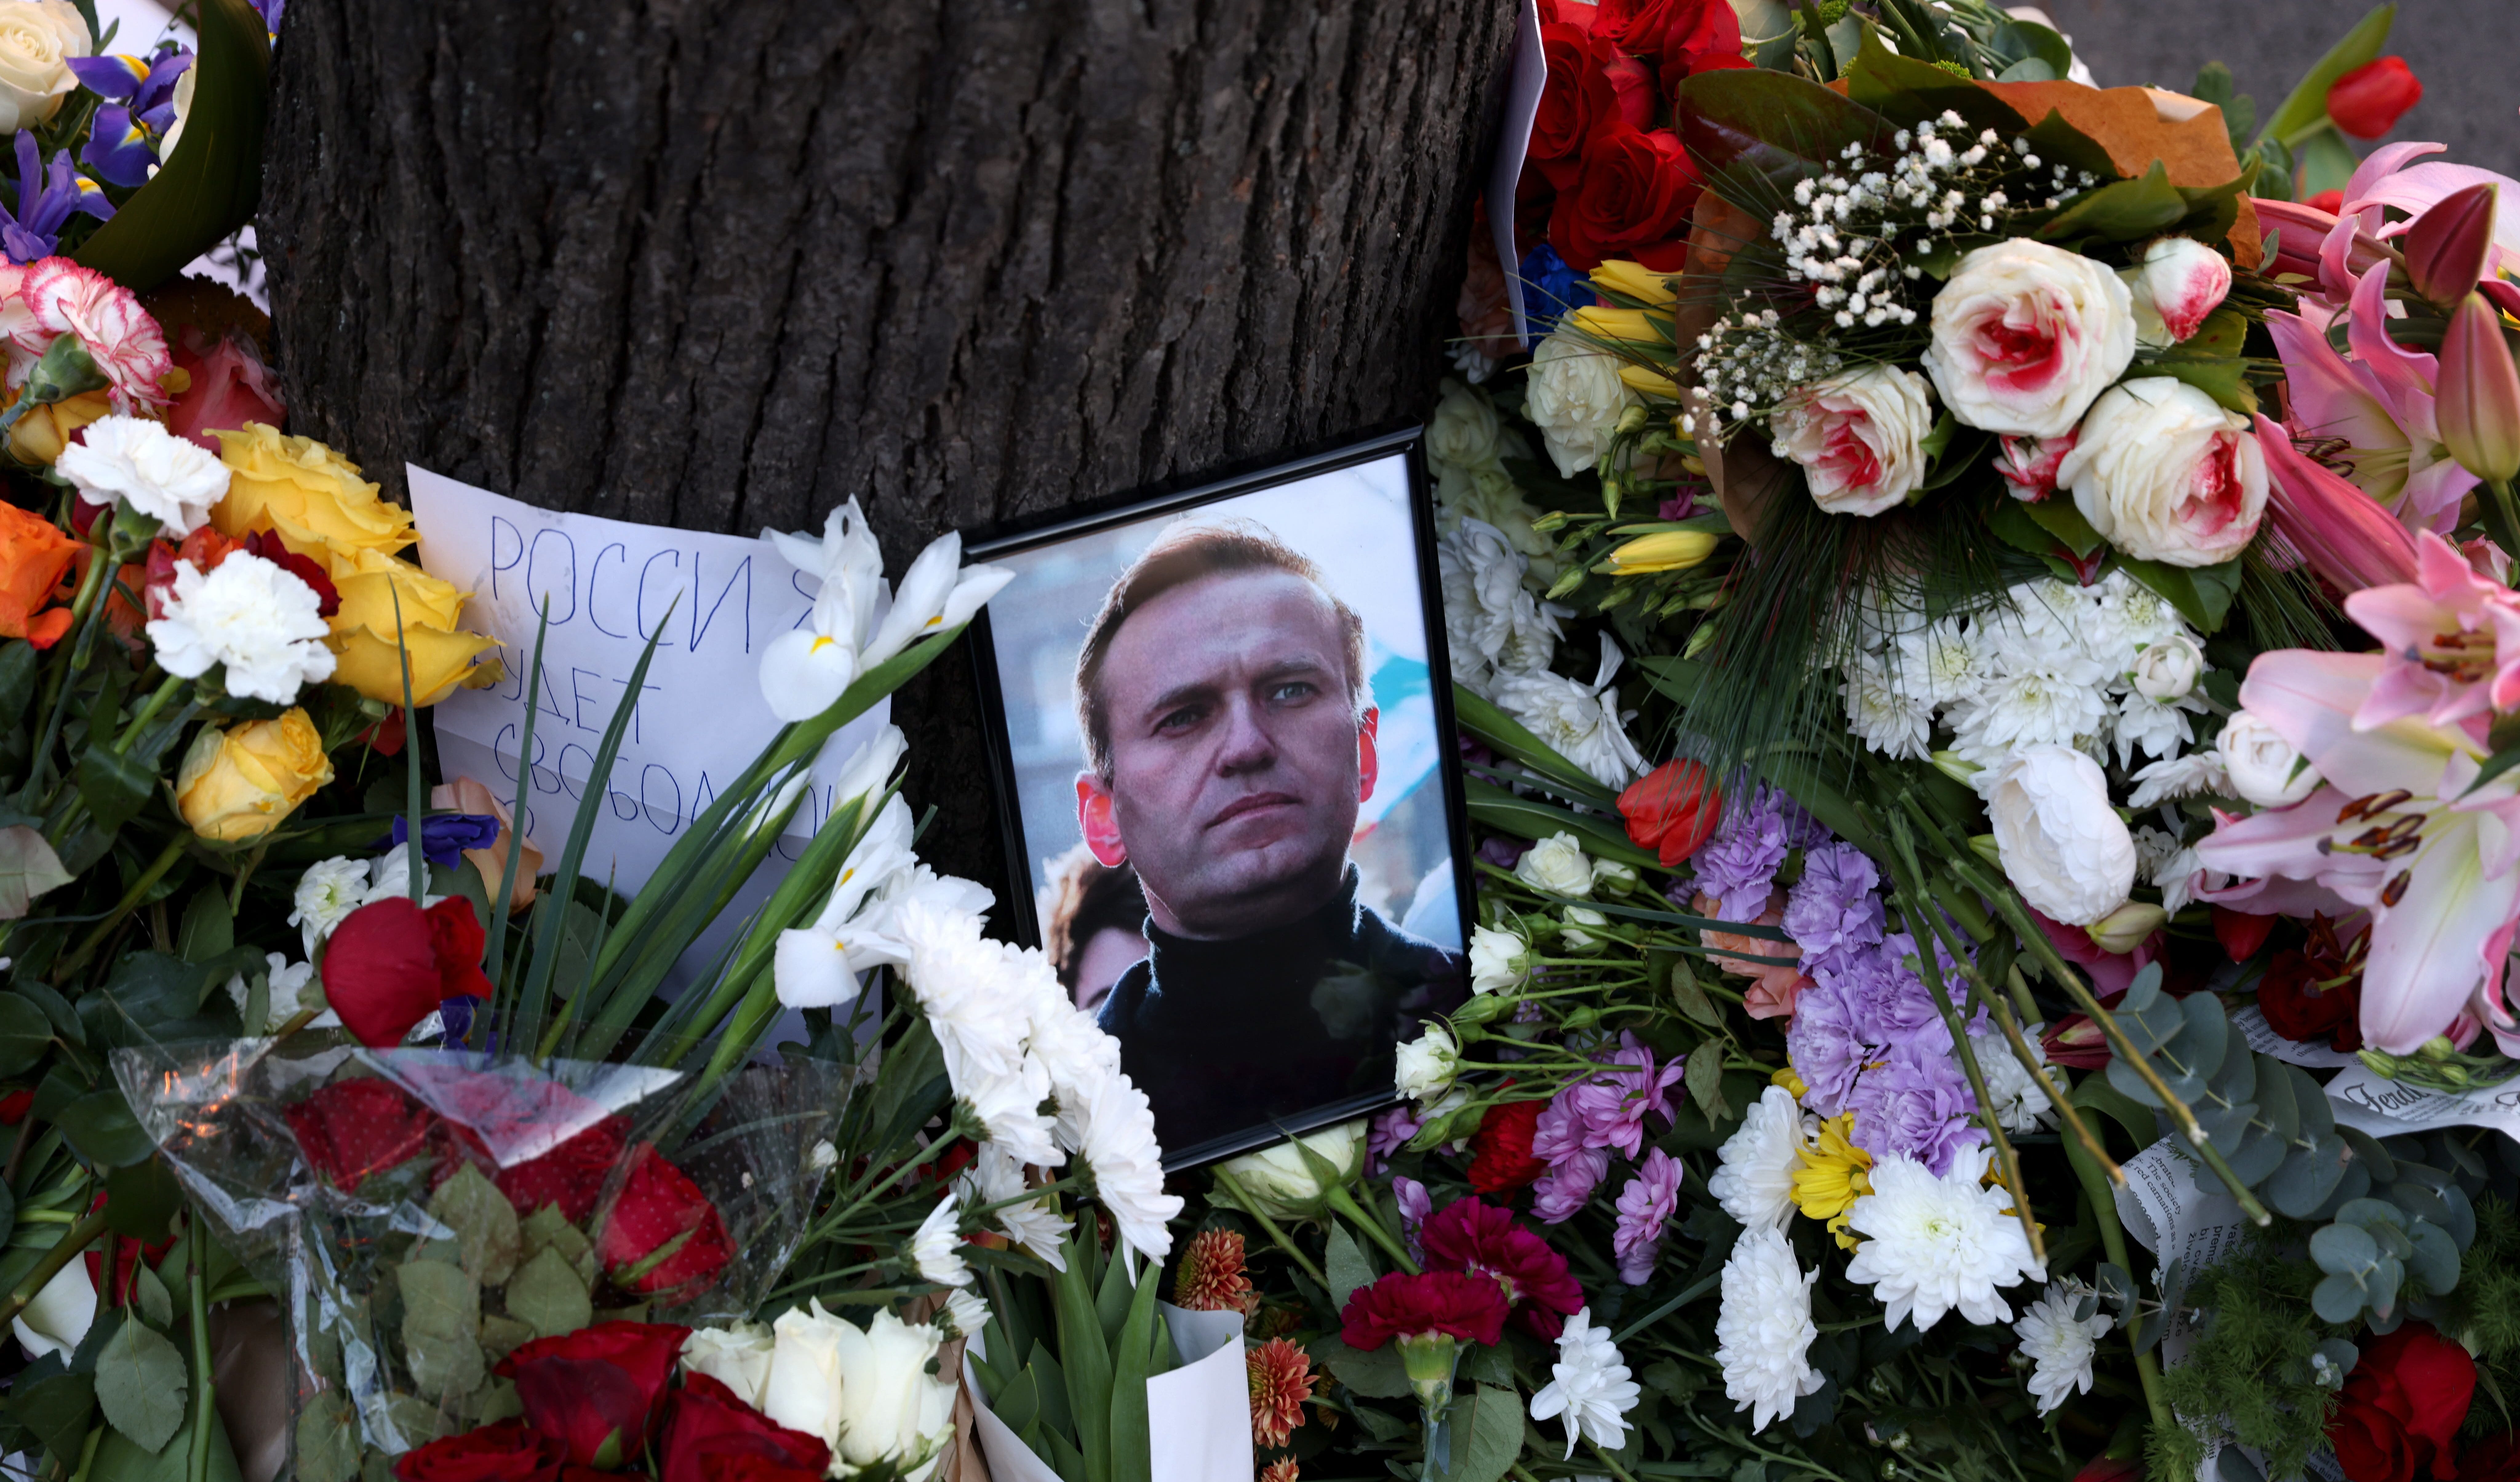 Continua il pellegrinaggio alla tomba di Alexei Navalny